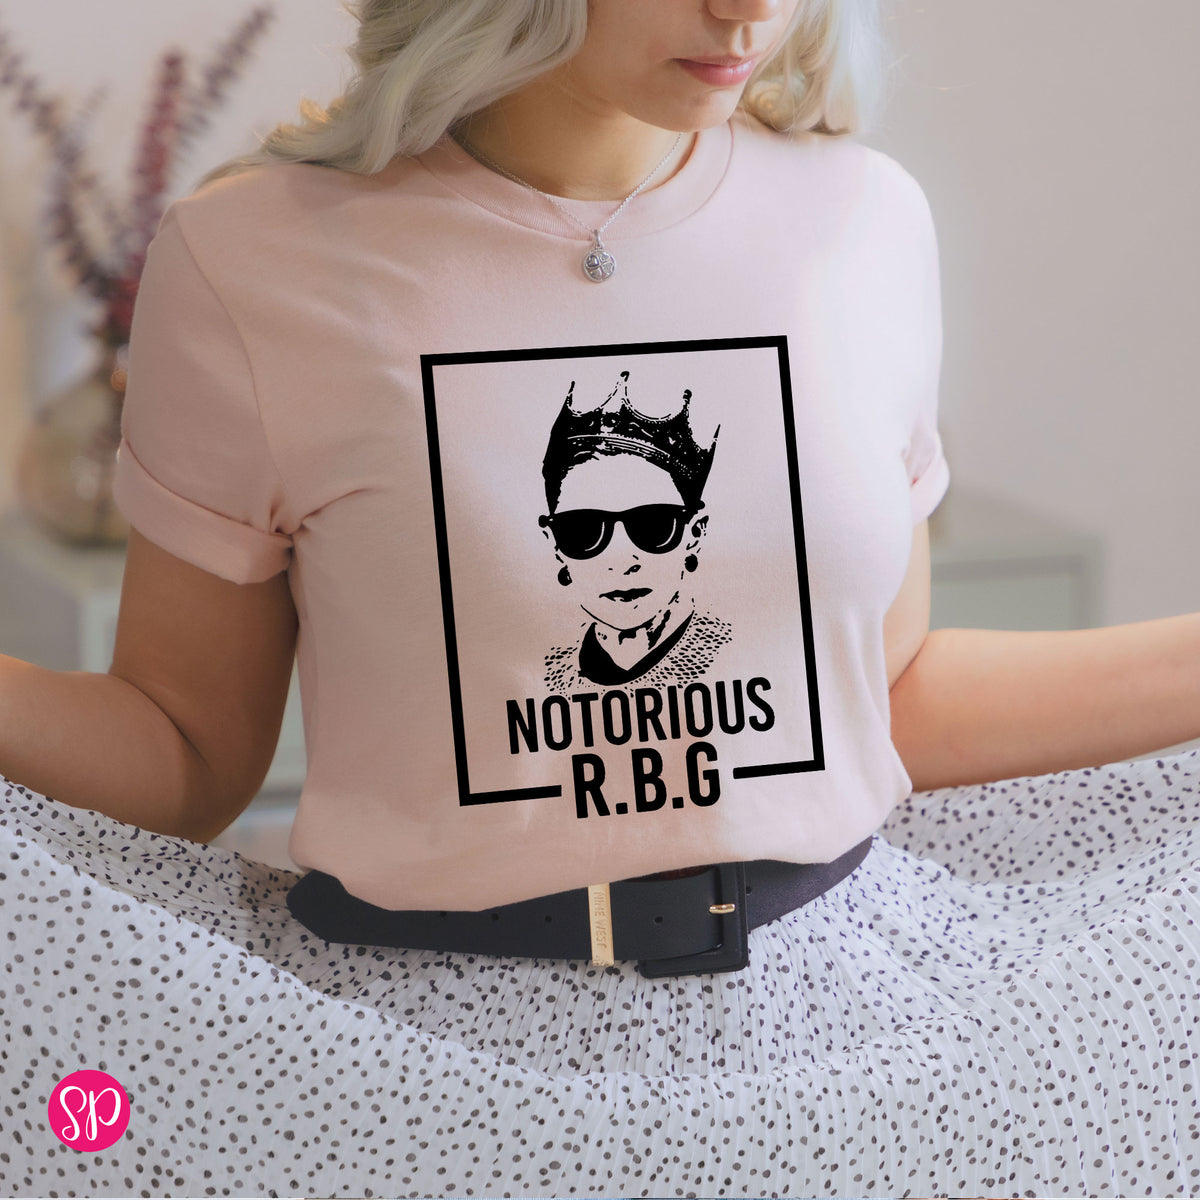 Norotious RBG Ruth Bader Ginsburg Supreme Judge Womens Rights Graphic Tee Shirt